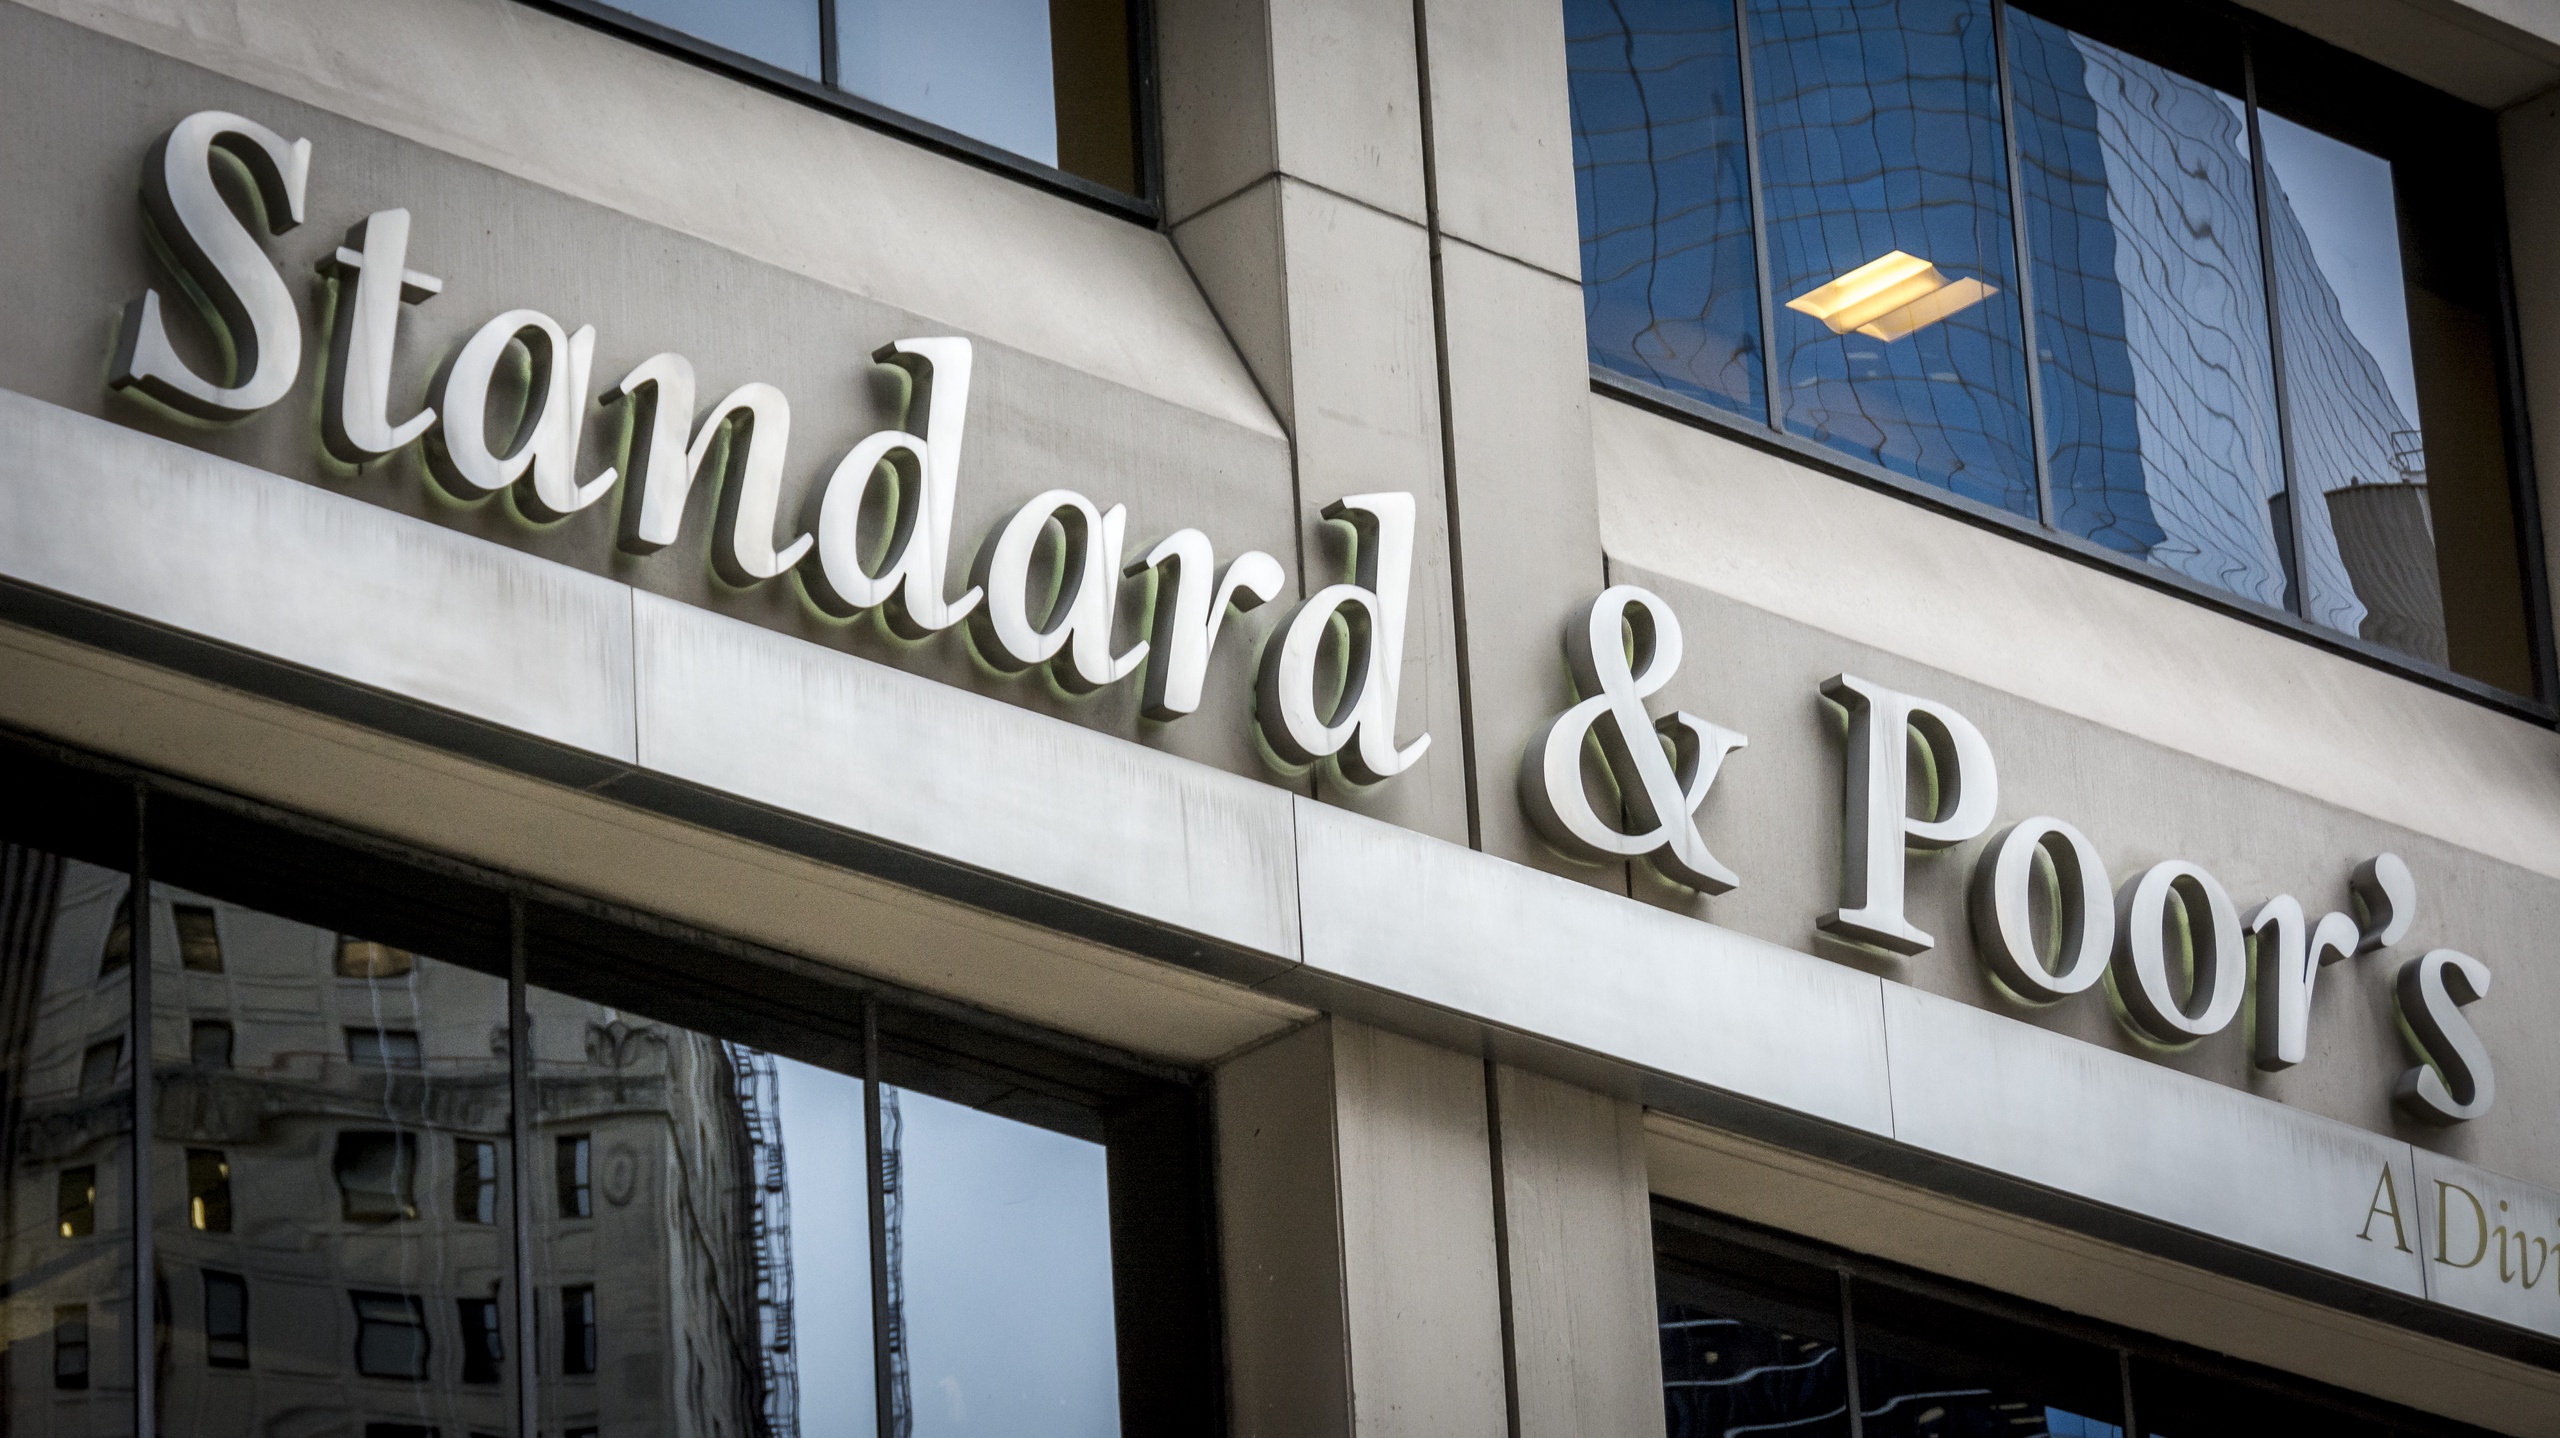 Het logo van Standard & Poor's